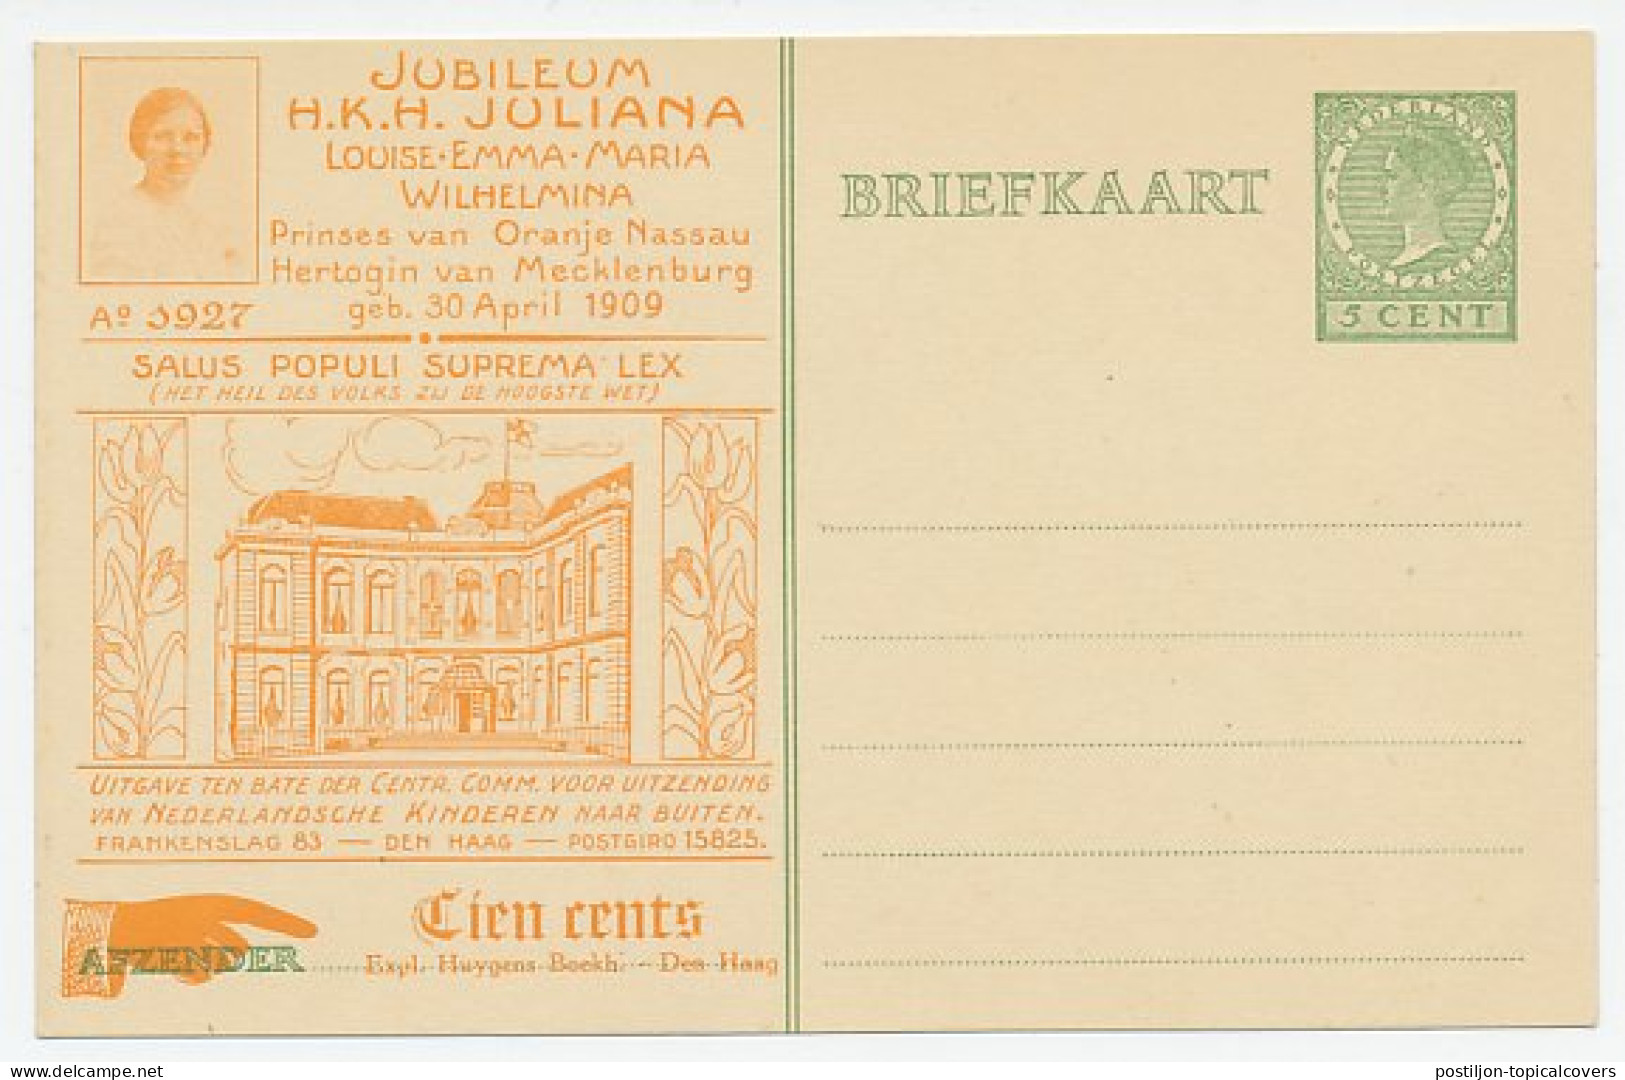 Particuliere Briefkaart Geuzendam KIN2 - Ganzsachen